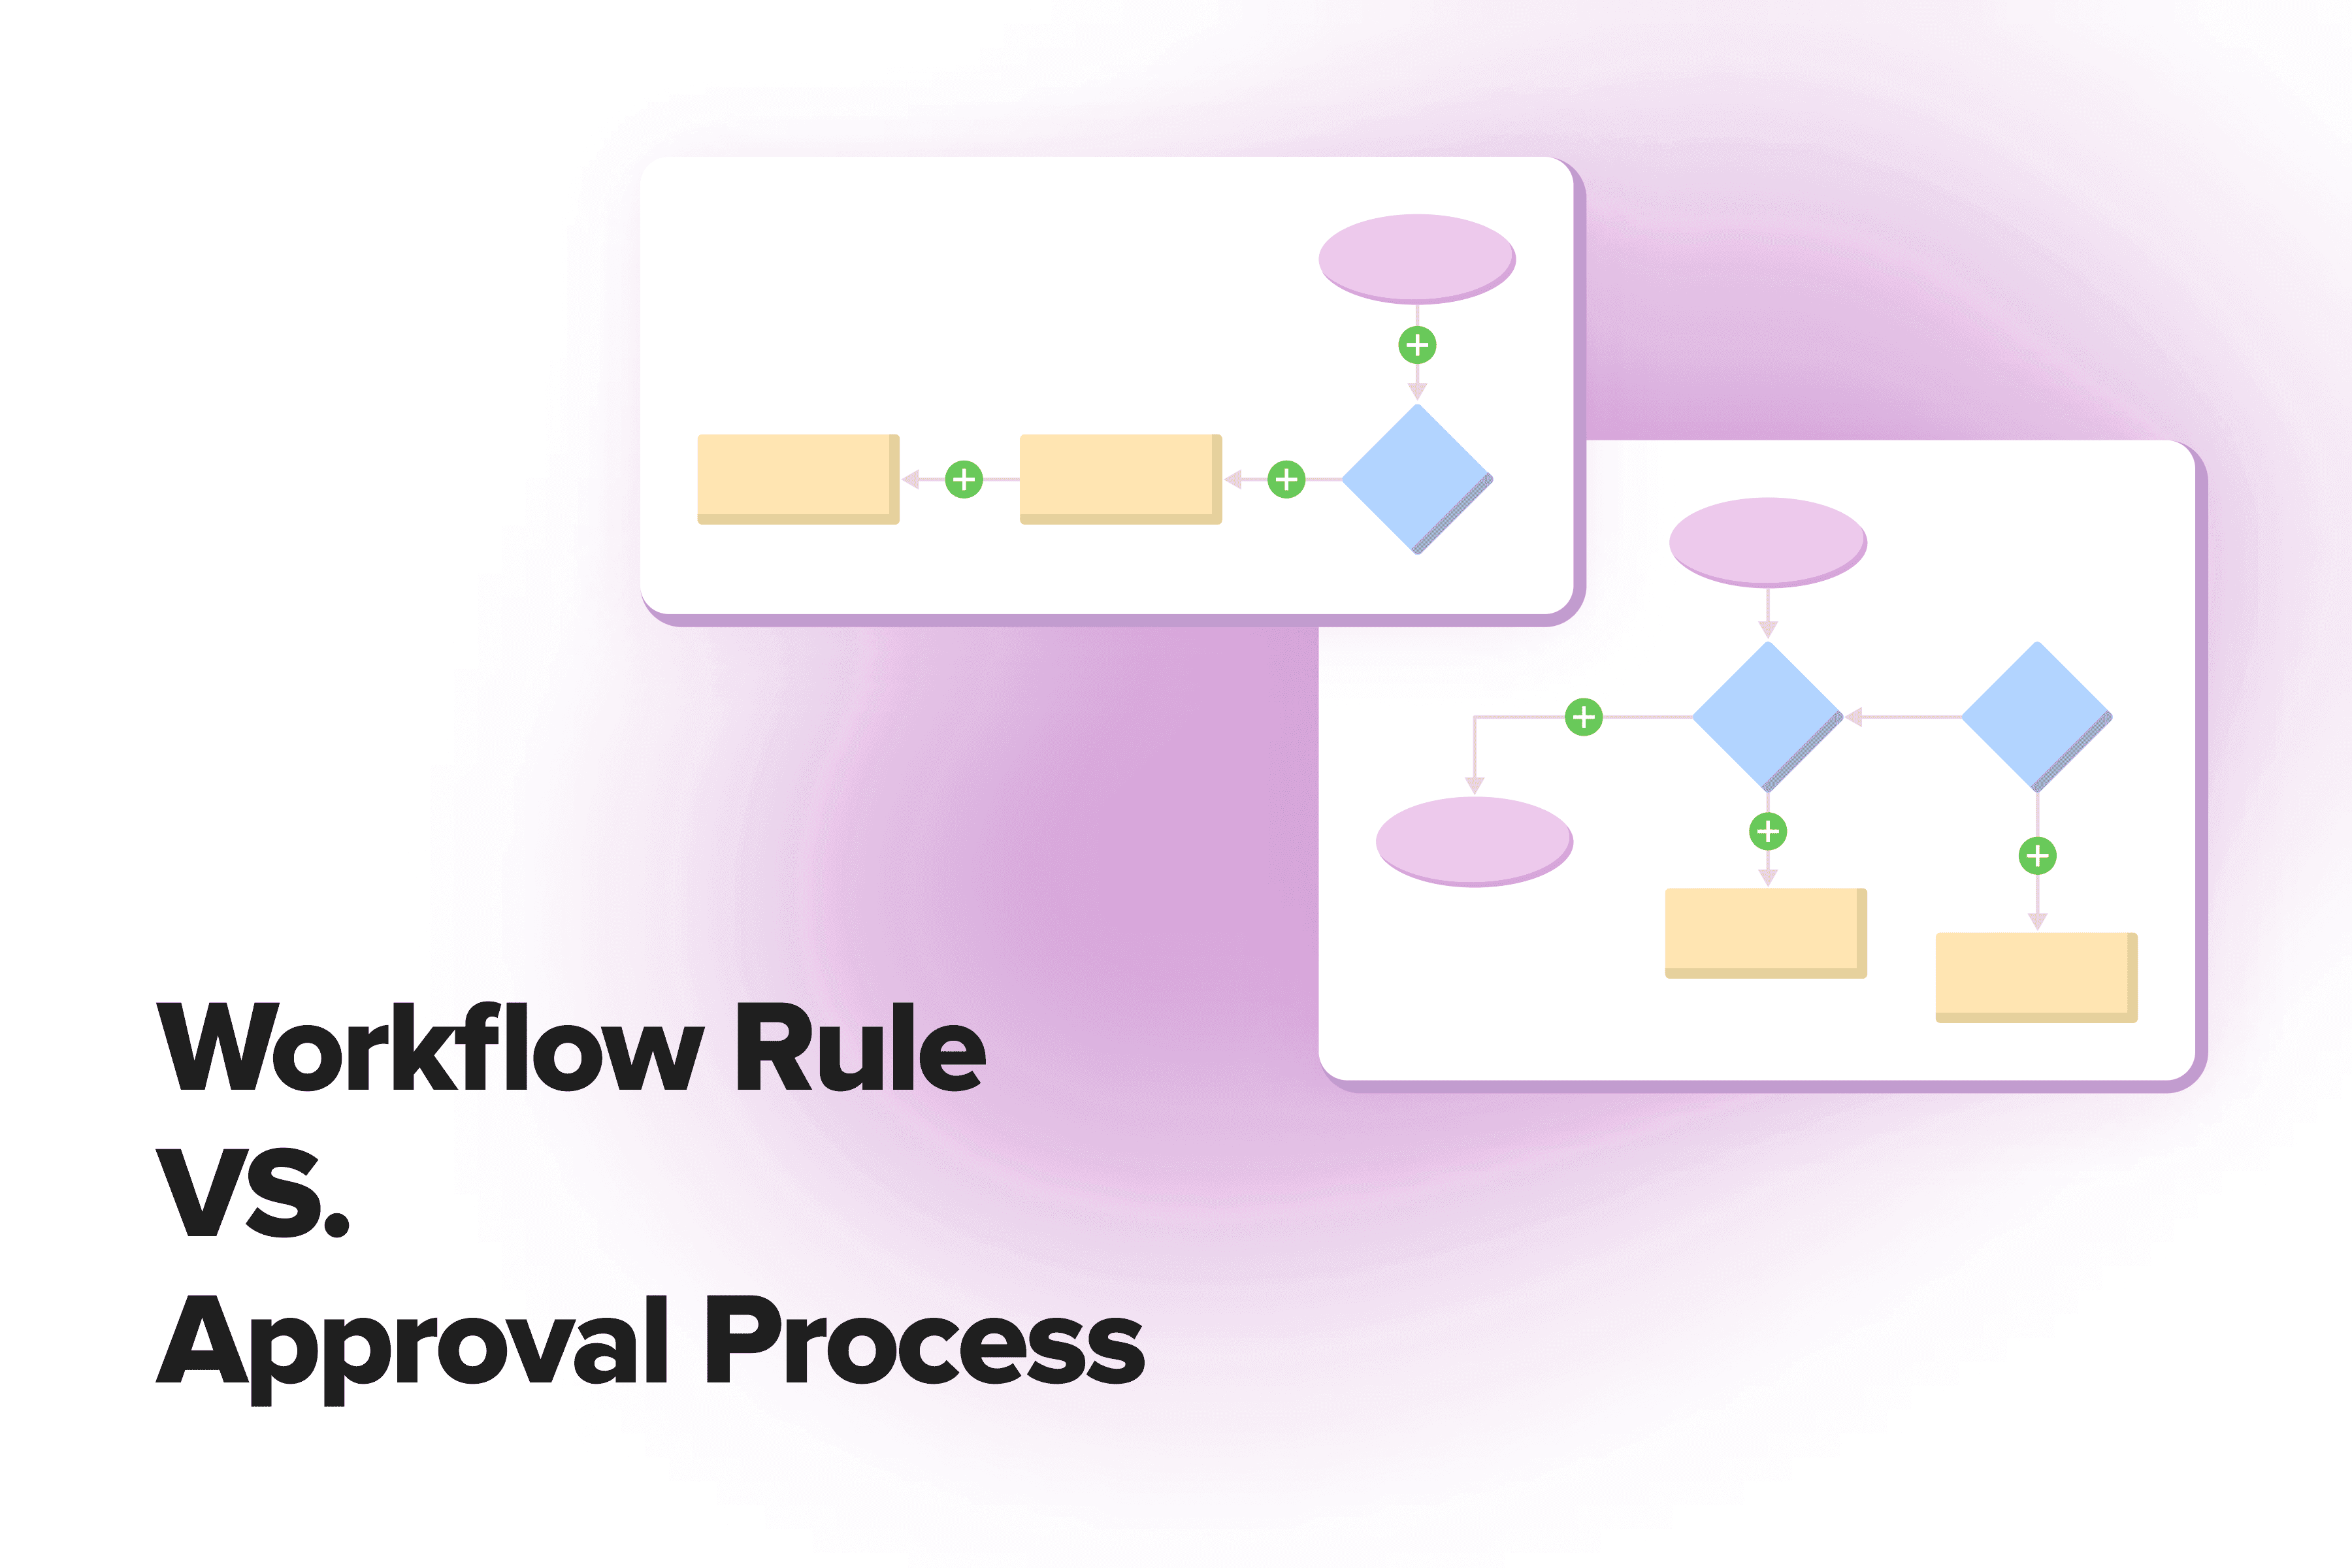 Workflow Rule VS. Approval Process